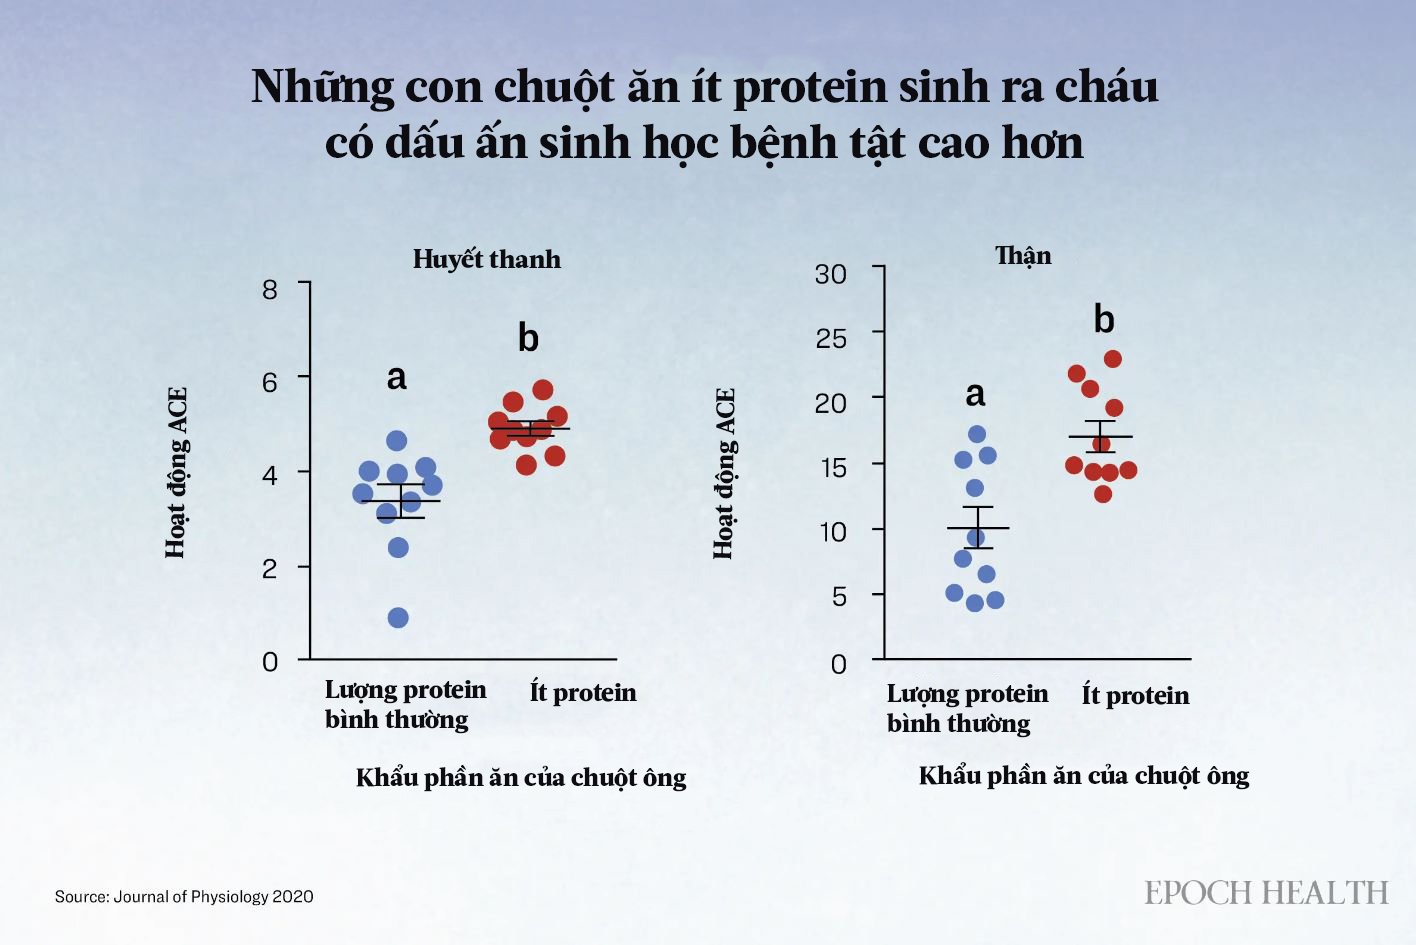 Các nhà khoa học quan sát thấy rằng khi chuột được cho ăn ít protein, thì thế hệ con cháu của chúng, cả đực và cái, đều biểu hiện các dấu hiệu bệnh tật cao hơn, chẳng hạn như hoạt động ACE trong huyết thanh và thận, so với thế hệ con cháu của những con chuột được cho ăn nhiều protein. (Ảnh: The Epoch Times)